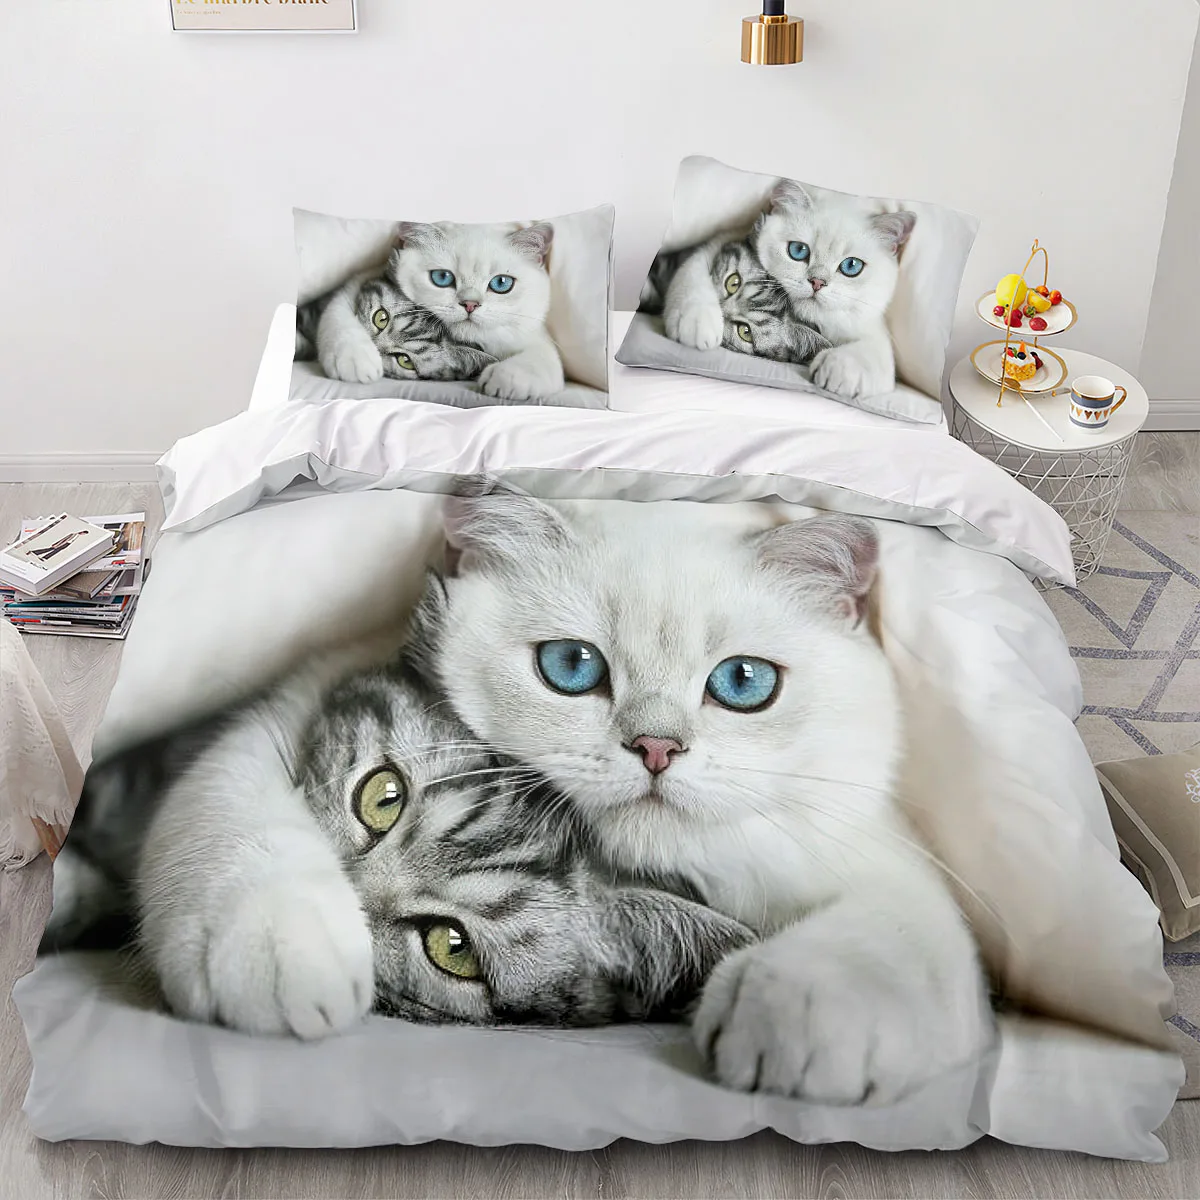 

Комплект постельного белья с 3D рисунком кота, пододеяльник с милым котом, покрывало для спальни, Детские и женские украшения для спальни, подростков